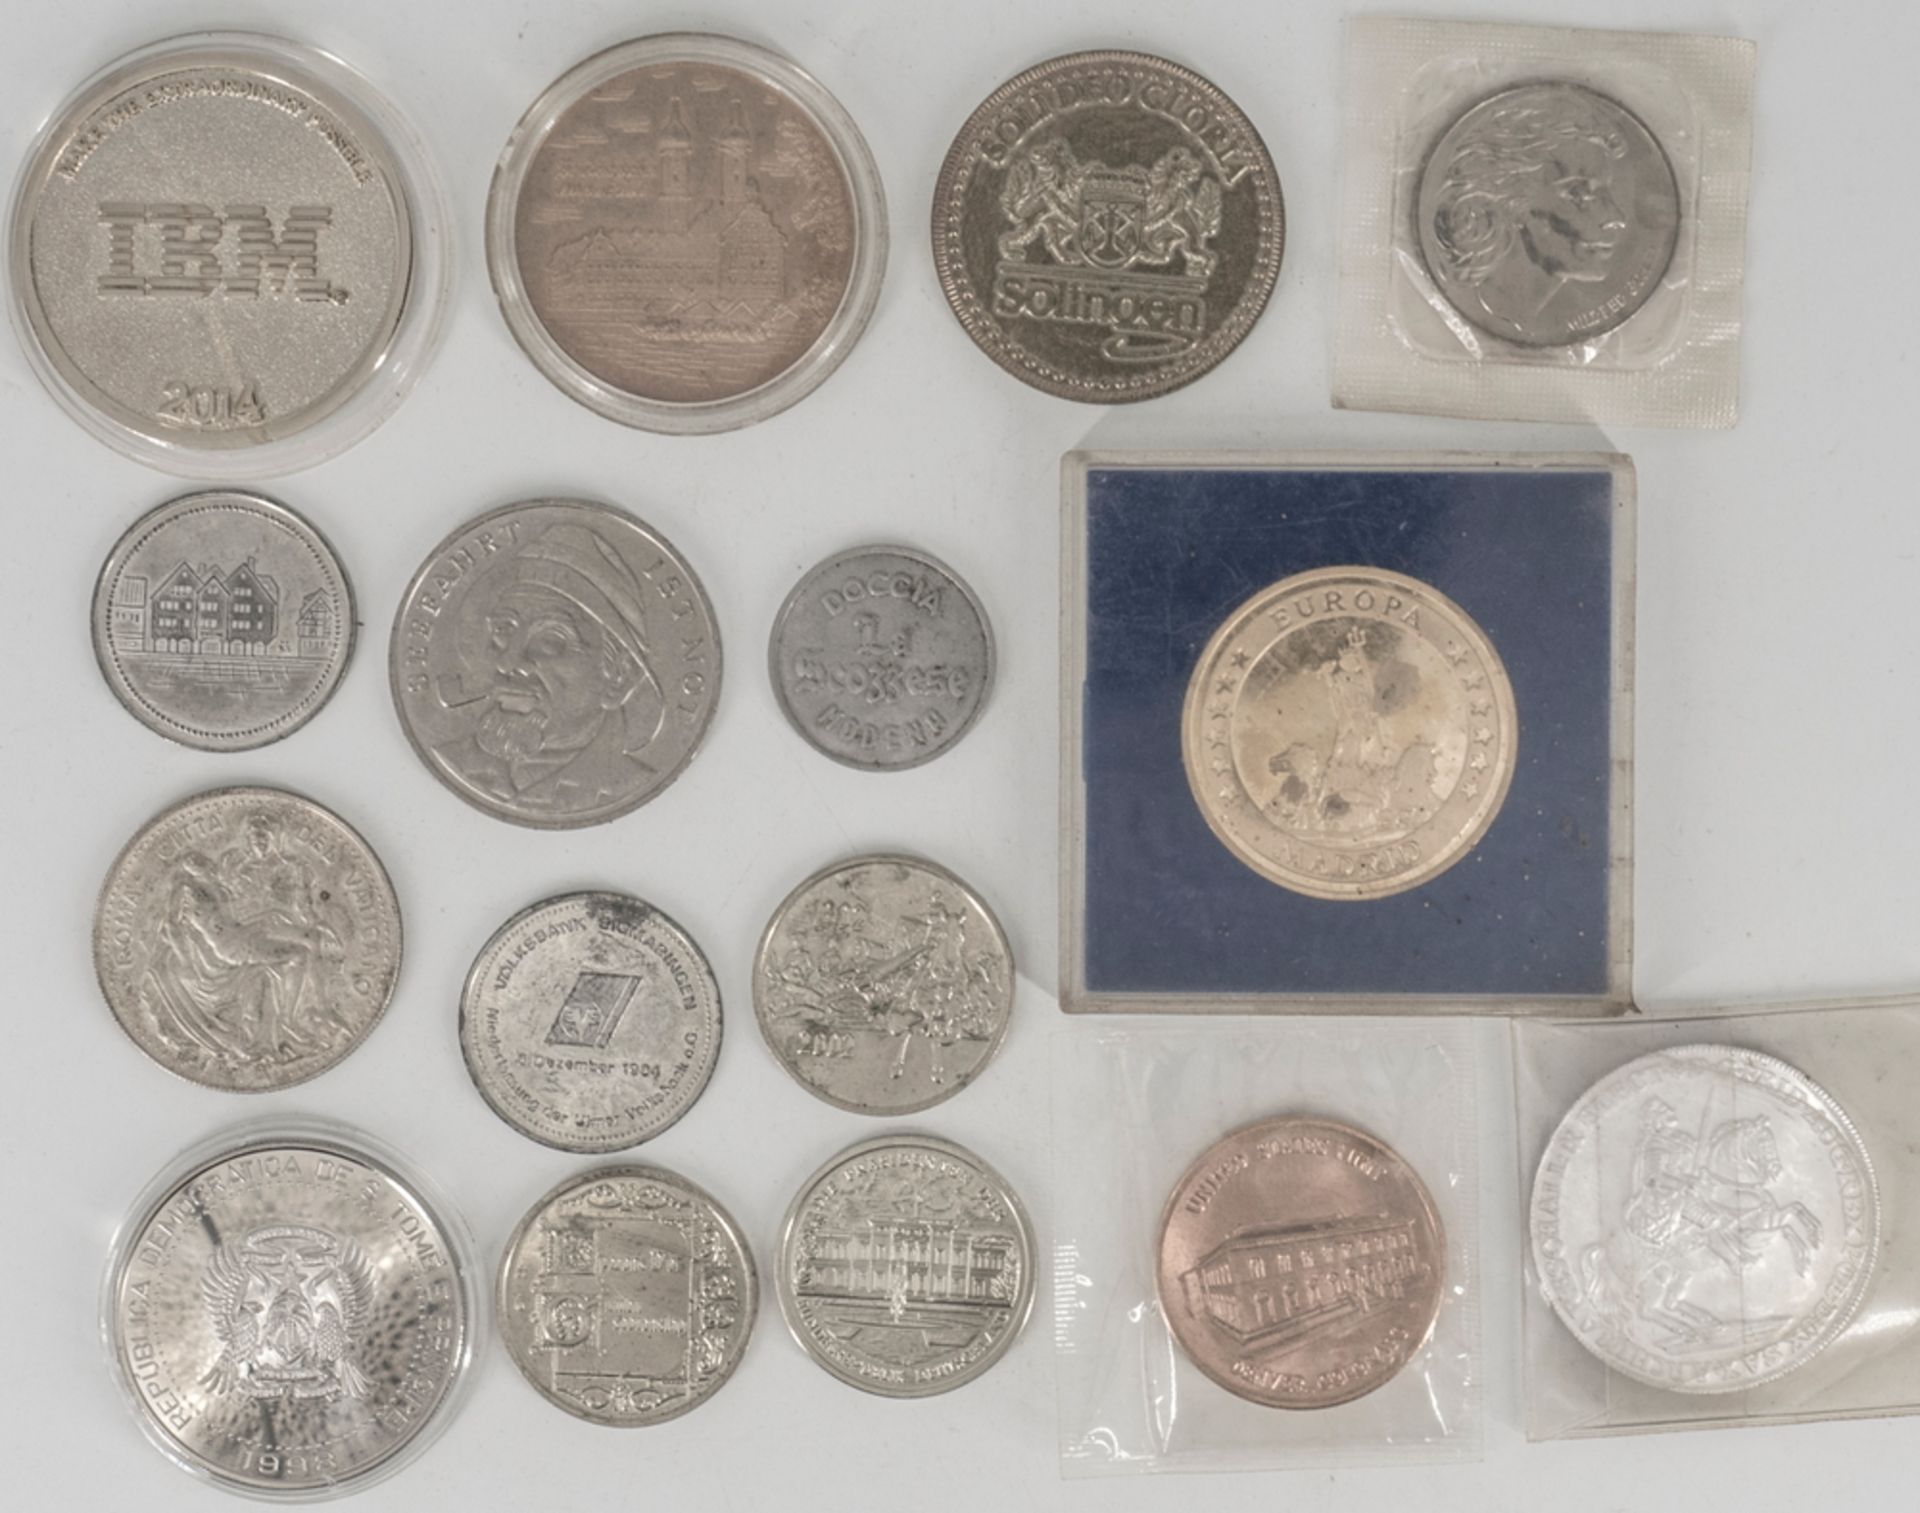 Lot Medaillen und Münzen, verschiedene Anlässe. Dabei Tomé 1998 2000 Dobras -Silbermünze und Spanien